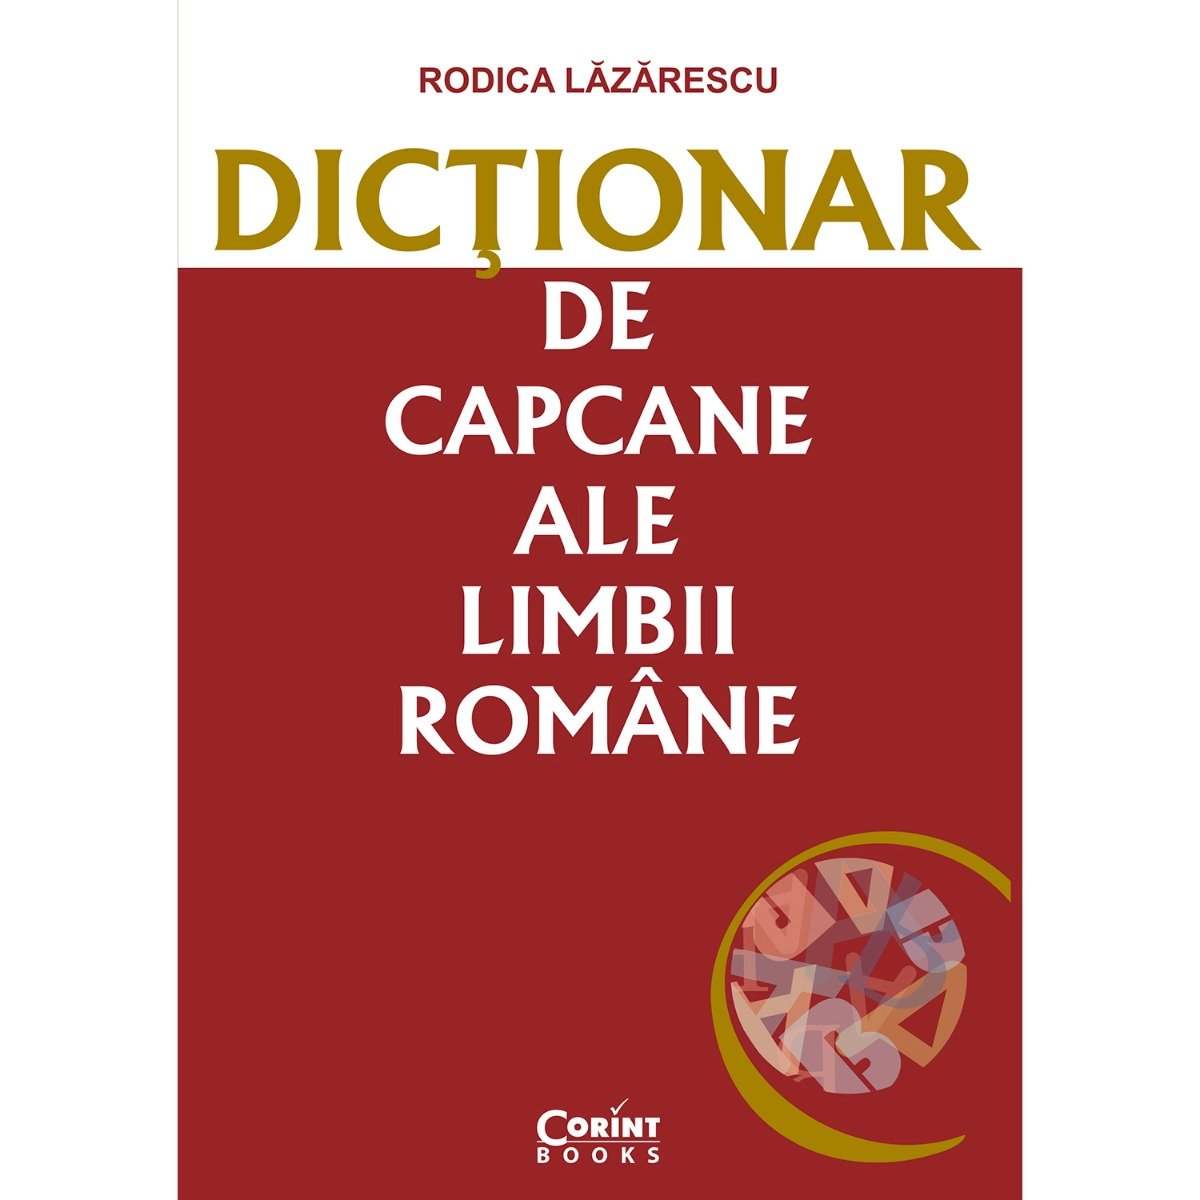 Dictionar de capcane ale limbii romane, Rodica Lazarescu Corint